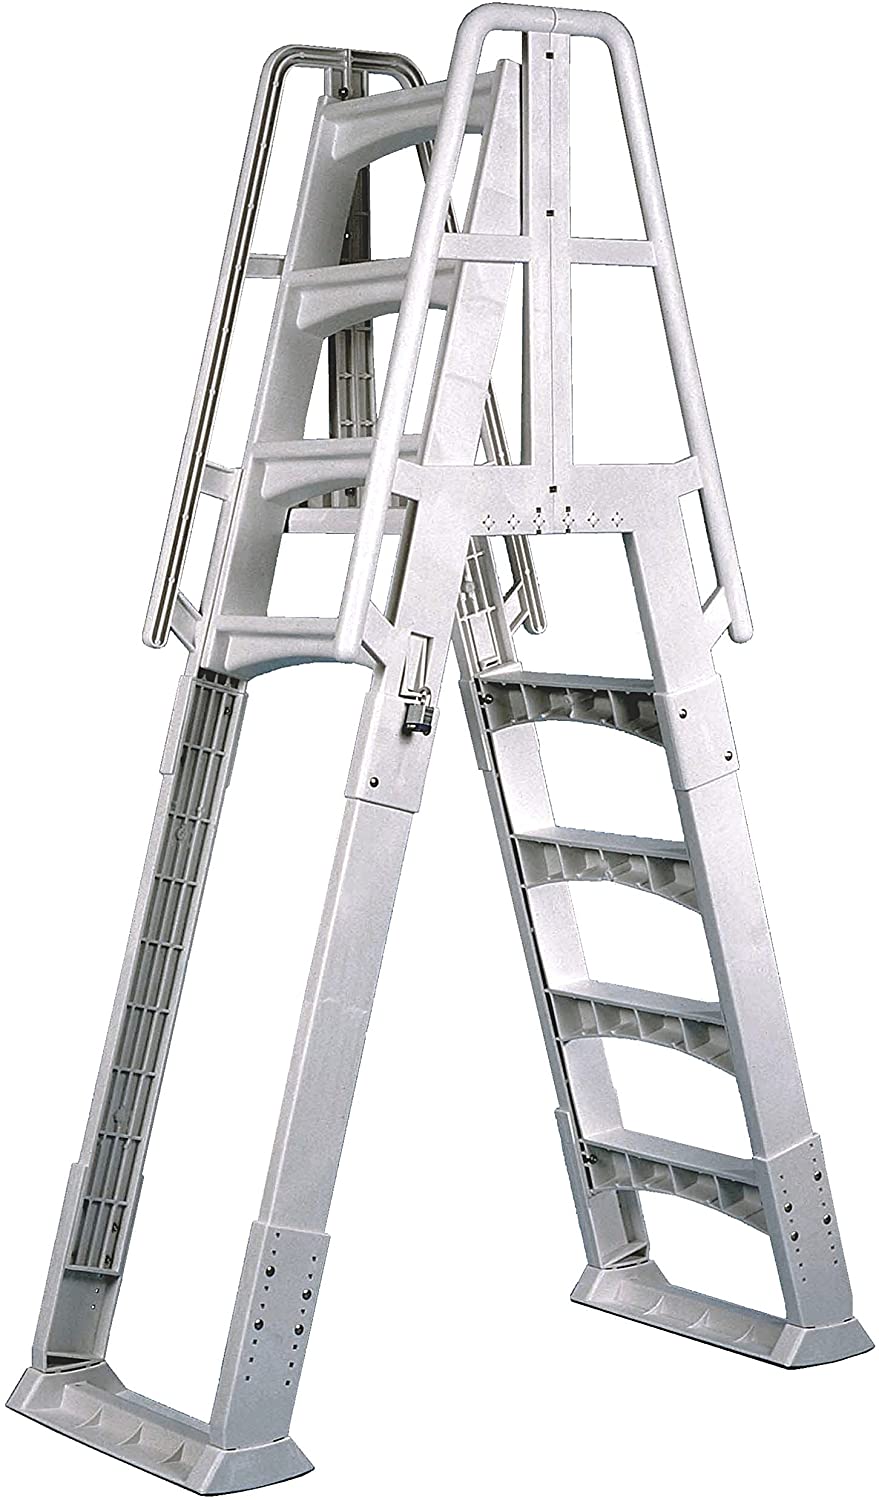 Slide & Lock A-frame Pool Ladder